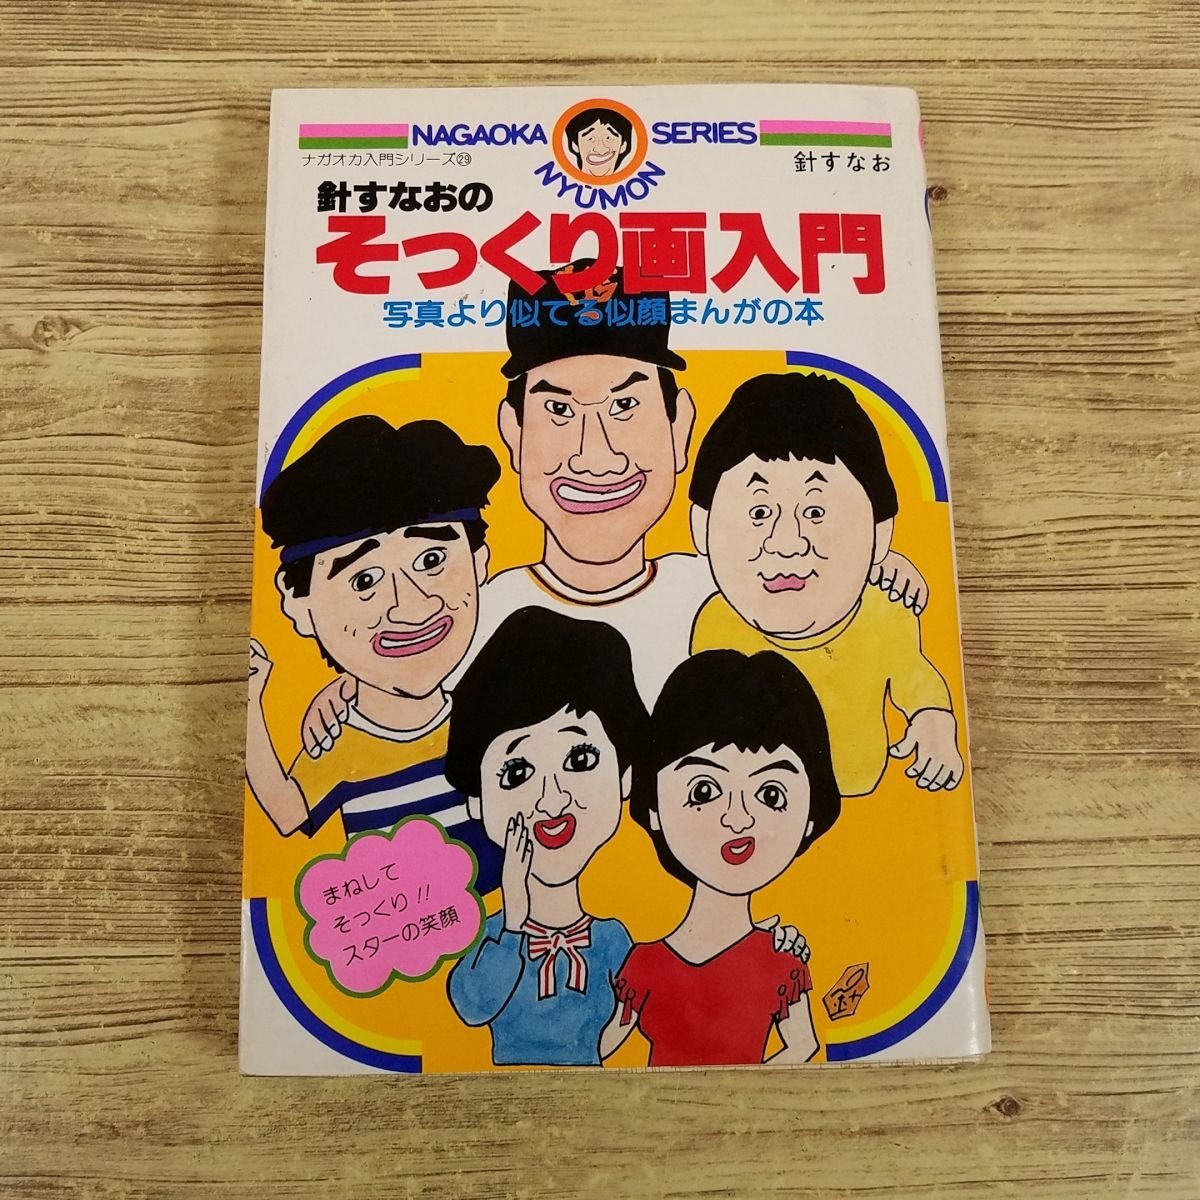 Manga-bezogen [Sunano Haris Doppelgänger-Zeichnung Einführung: Ein Manga-Buch, das ähnlicher aussieht als das Foto] Karikatur Nagaoka Einführungsserie Showa Retro [Versandgebühr: 180 Yen], Buch, Zeitschrift, Comics, Comics, Andere